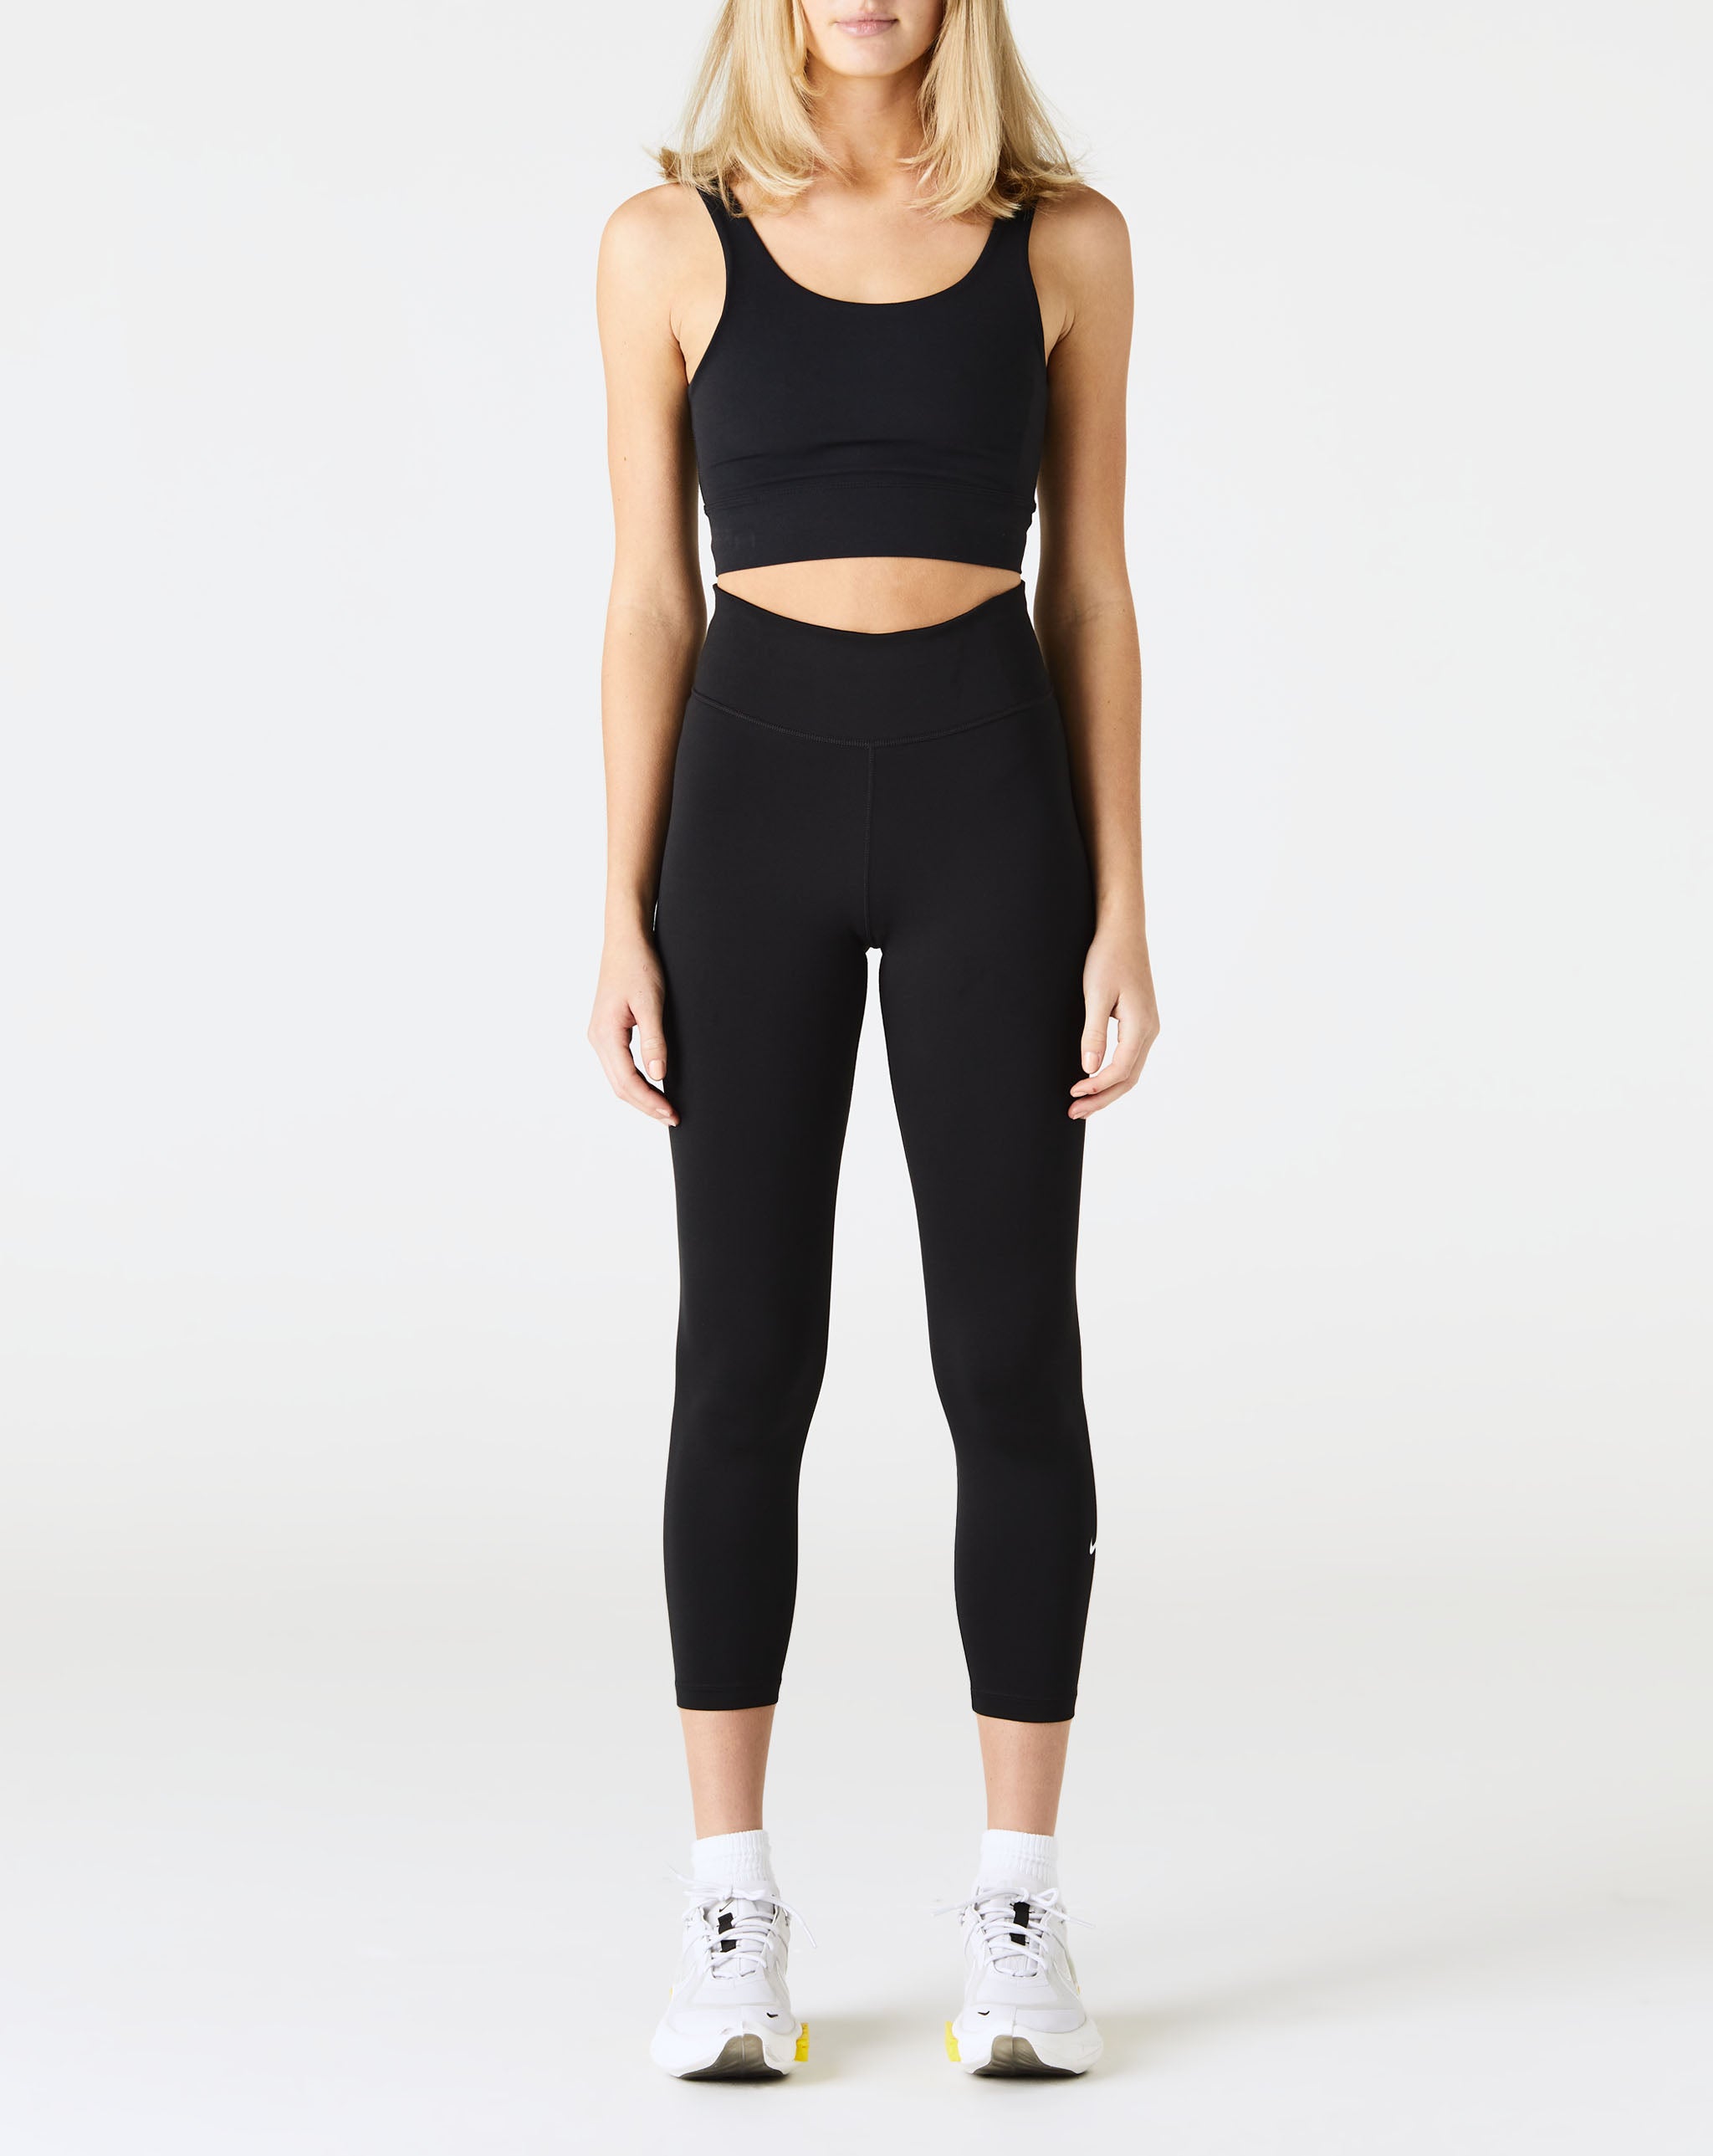 Nike Women's Yoga Luxe Bra - Rule of Next Apparel